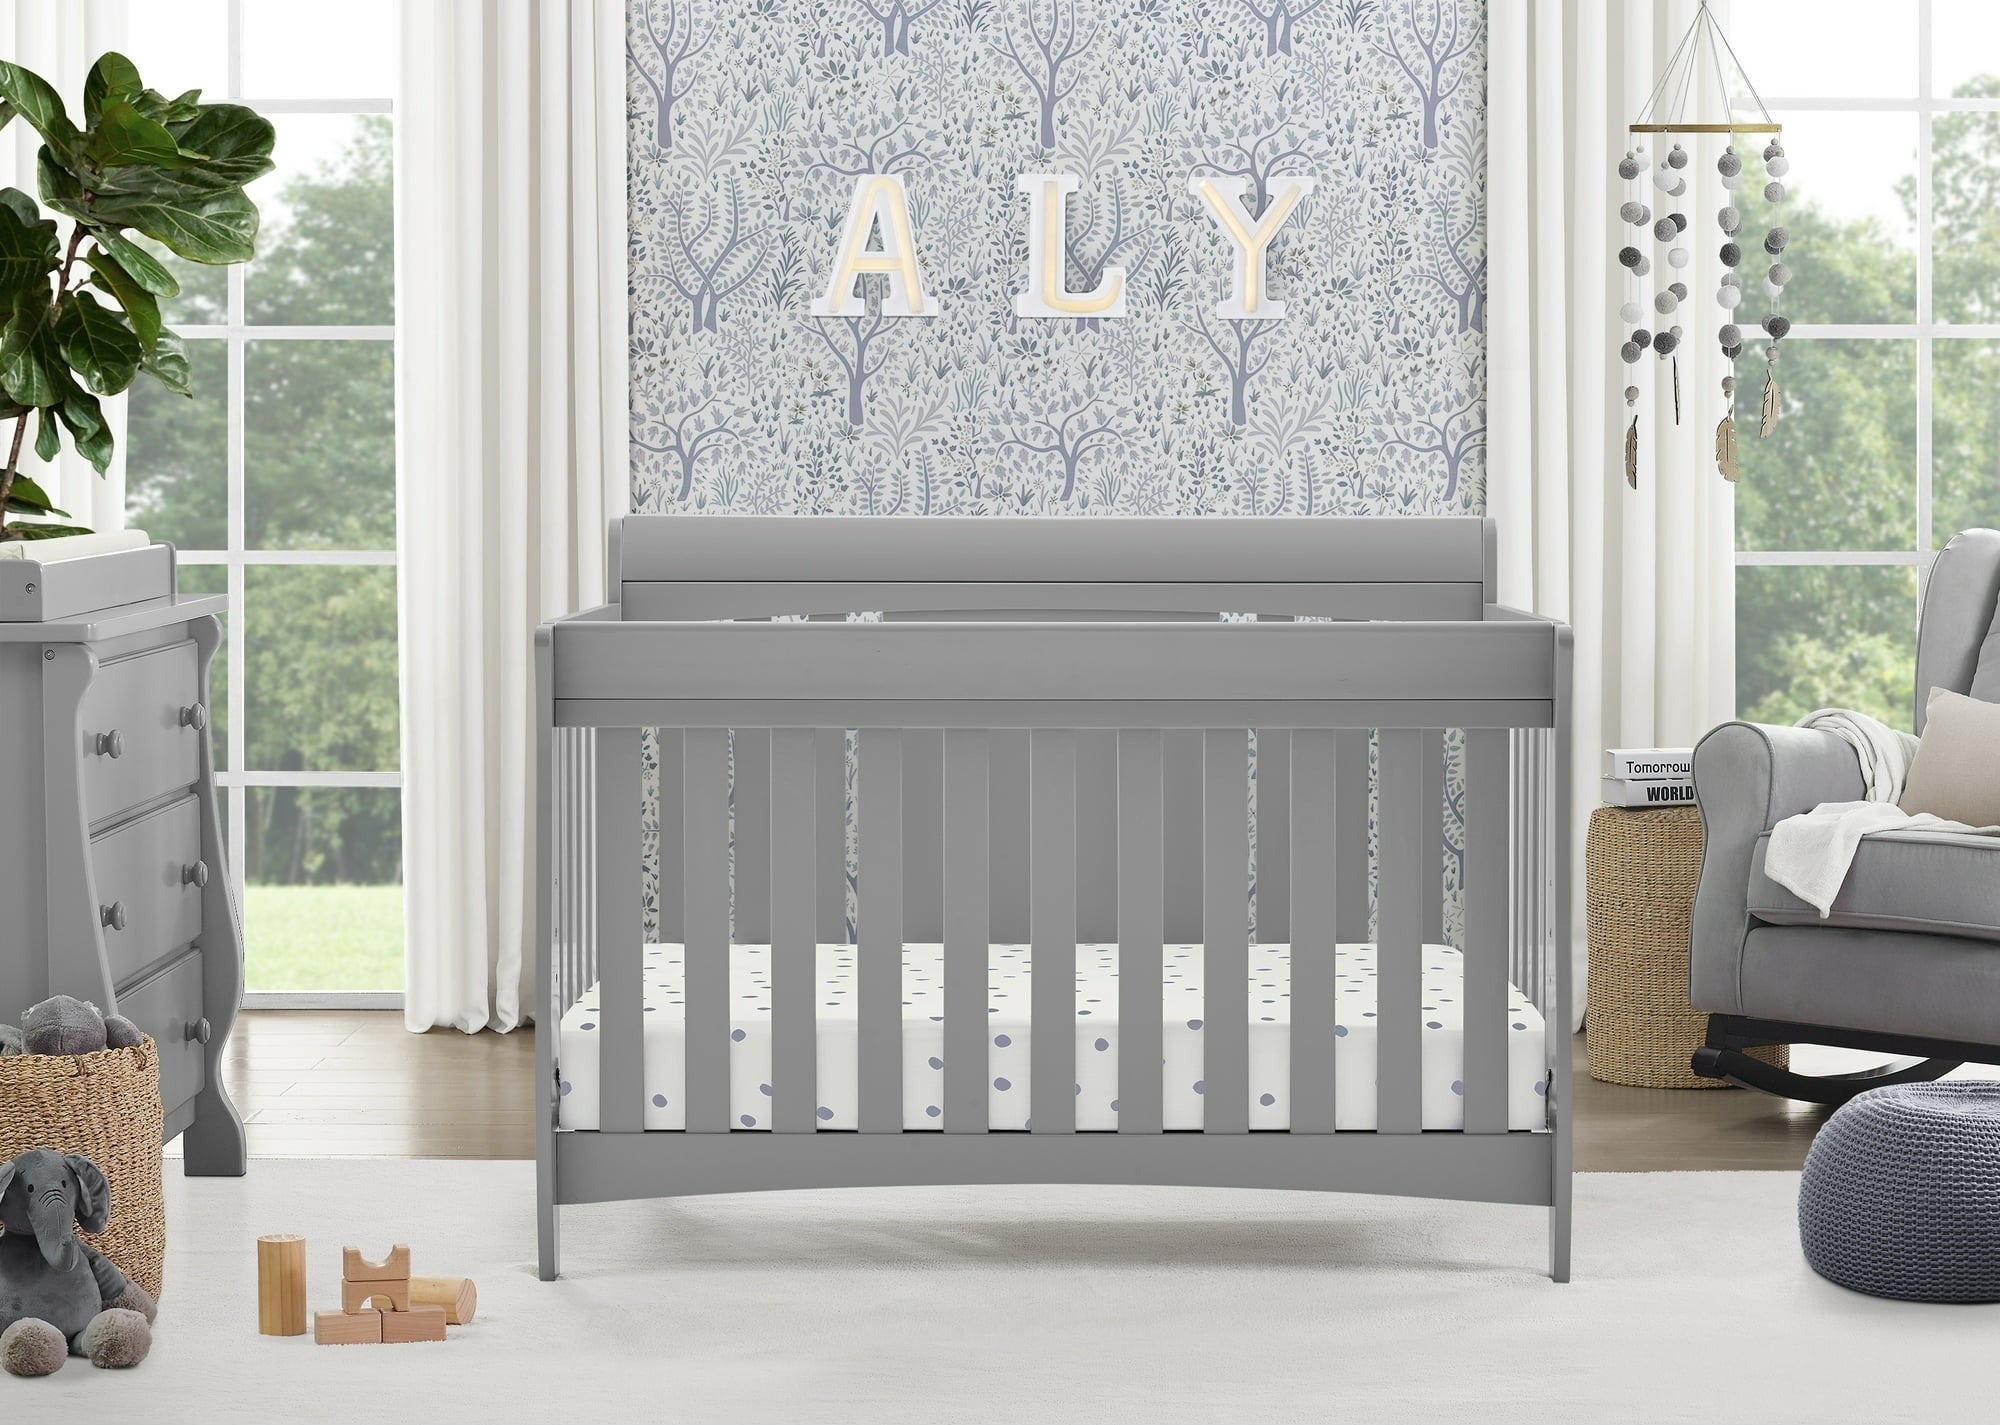 A crib in a nursery